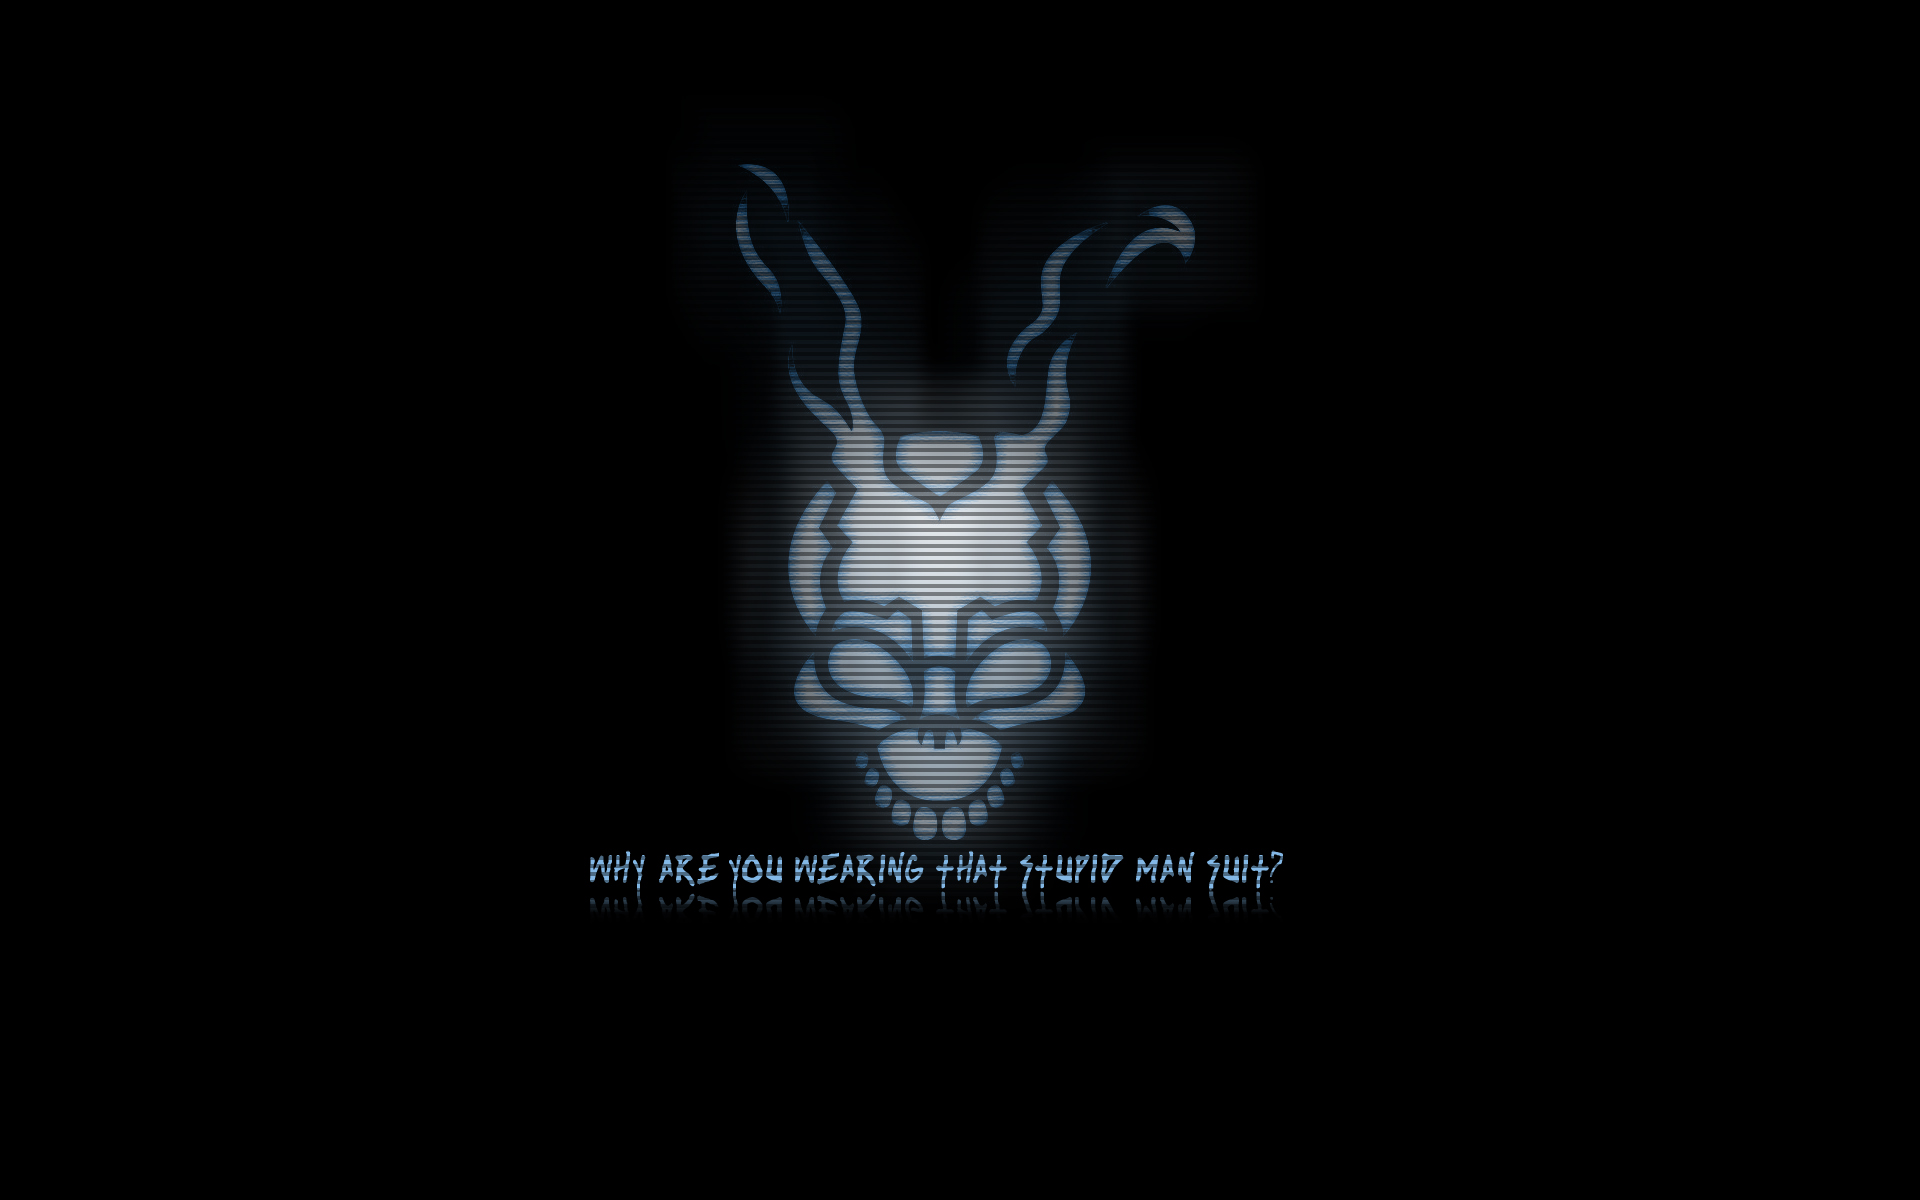 Movie Donnie Darko HD Wallpaper | Background Image